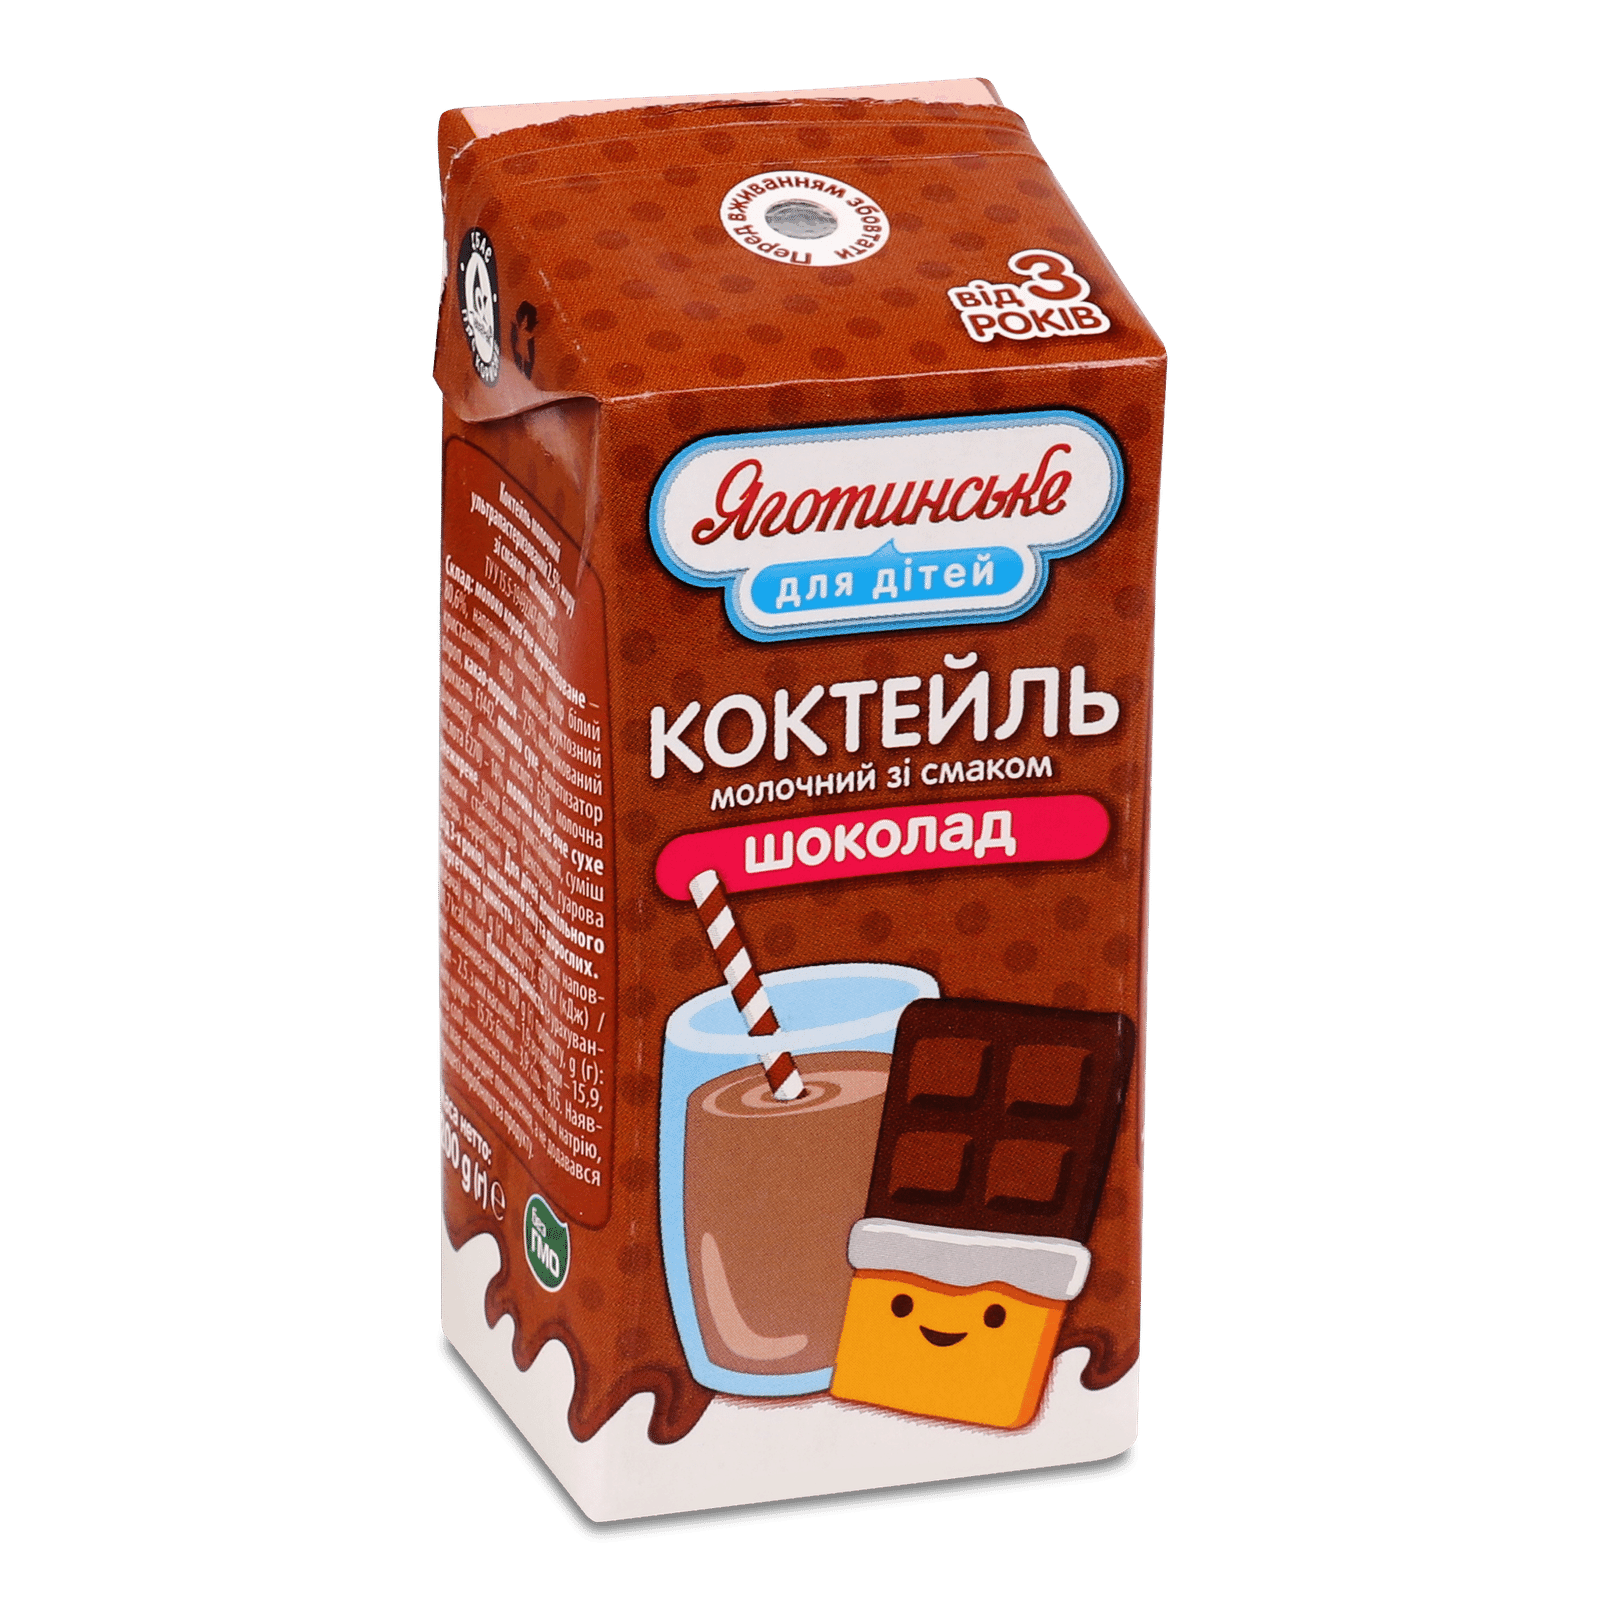 Коктейль молочний «Яготинське для дітей» «Шоколад» 2,5% - 1